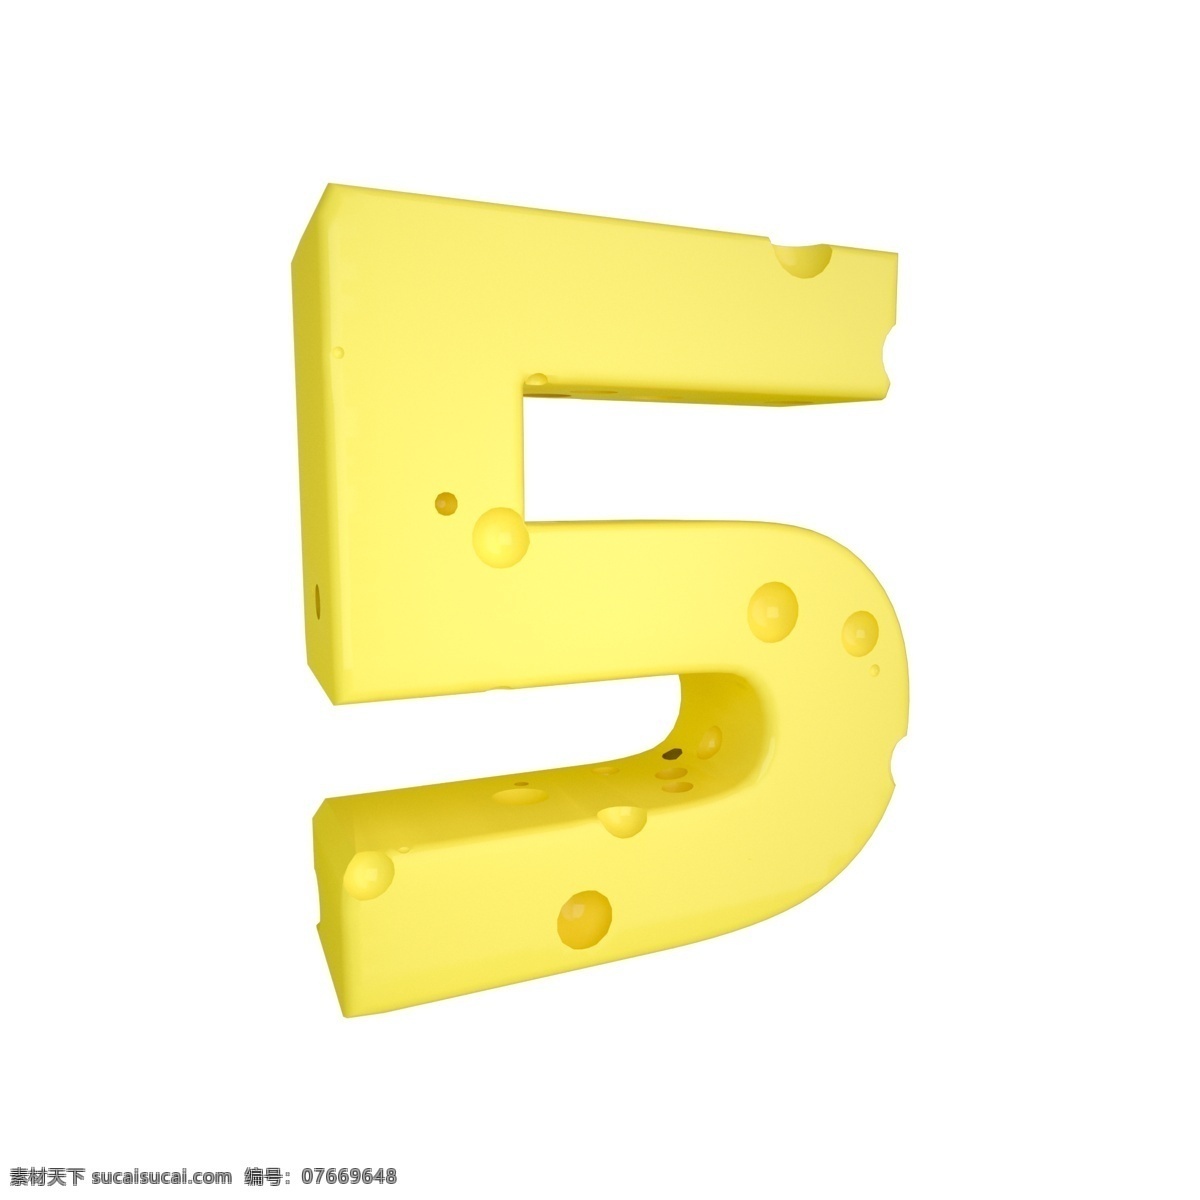 c4d 创意 奶酪 数字 装饰 3d 黄色 立体 食物 平面海报配图 电商淘宝装饰 可爱 柔和 数字5